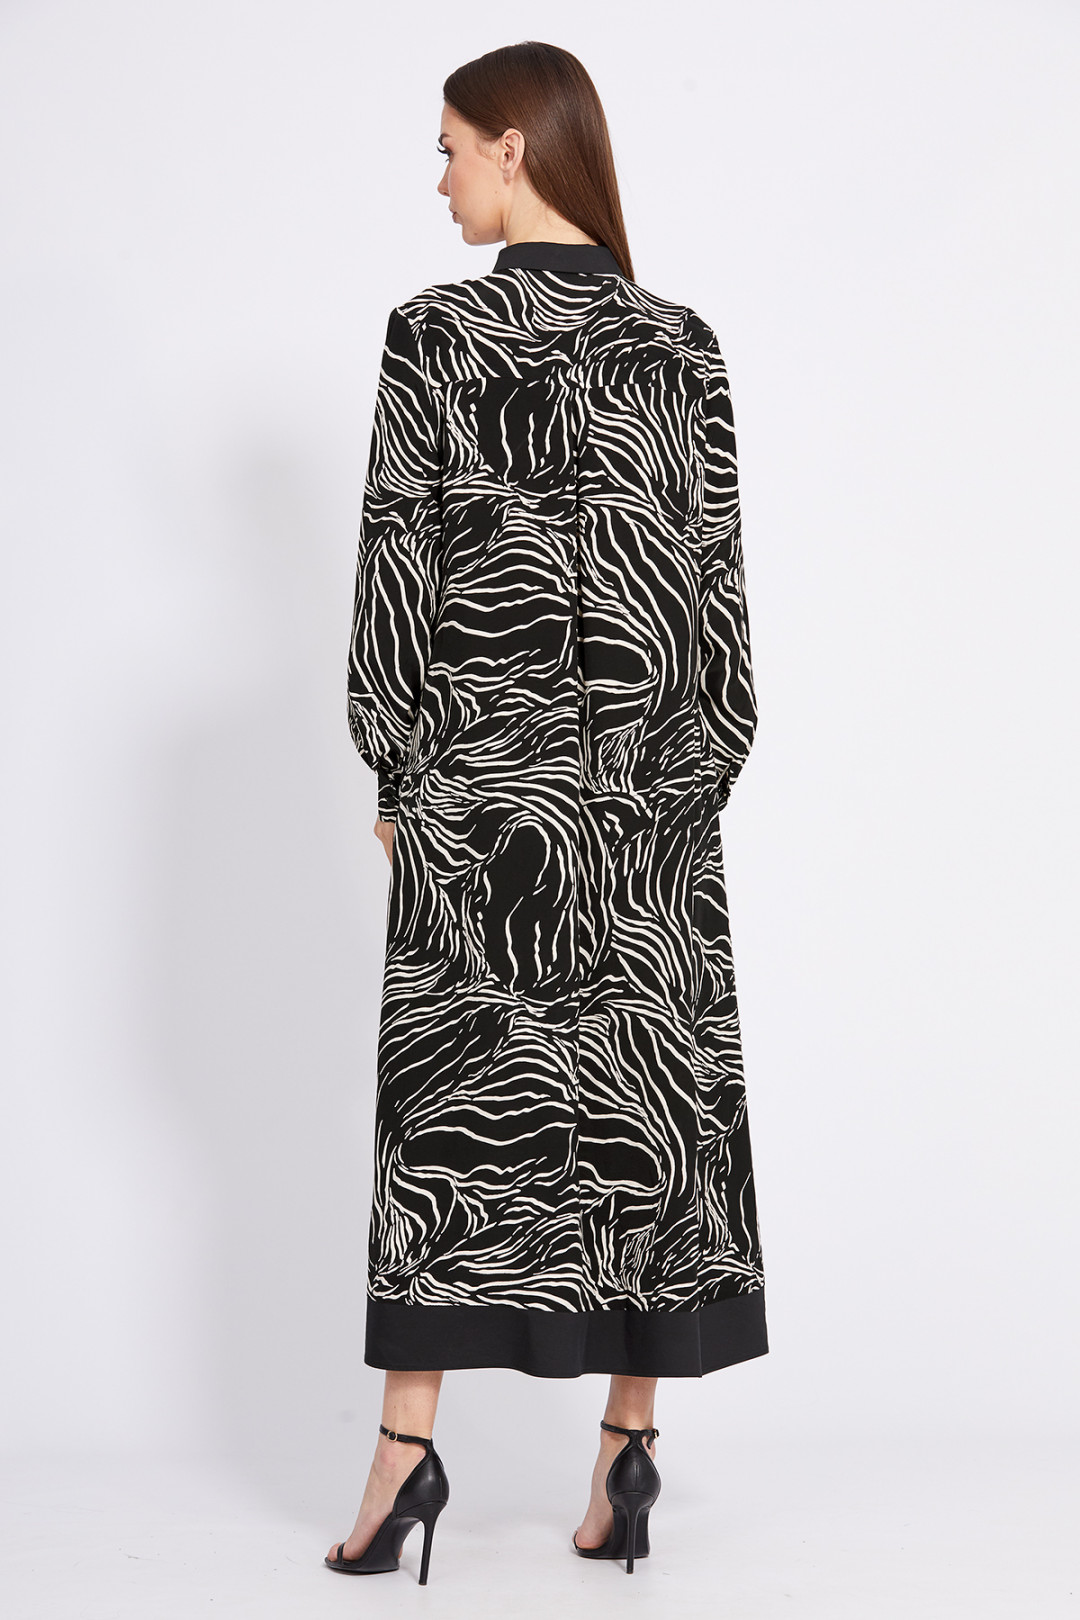 Платье Эола Стиль 2430 черный с рисунком